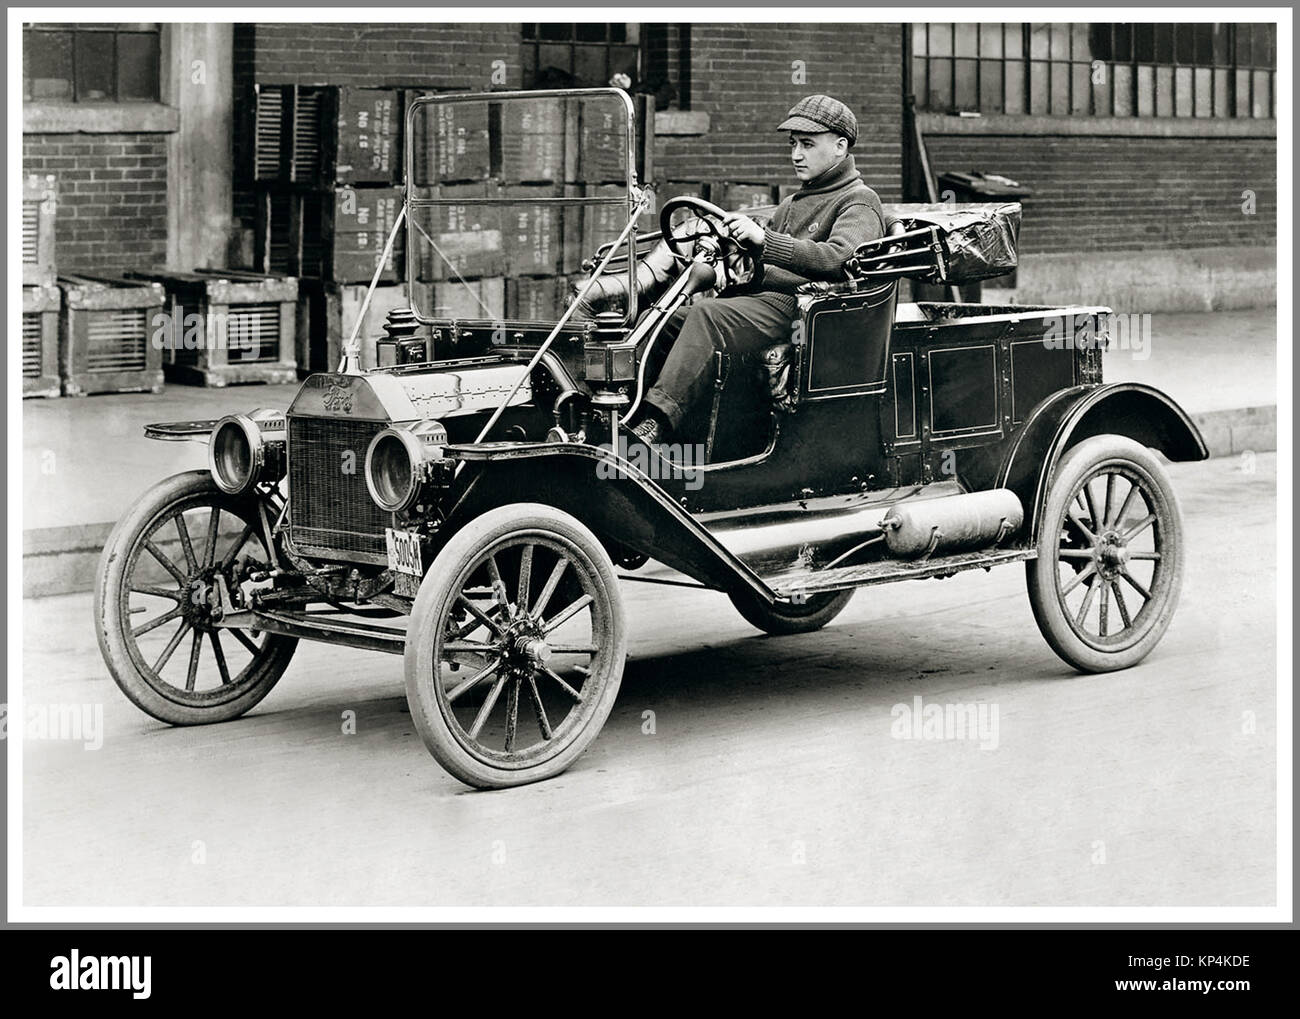 FORD MODÈLE T 1908 essai d'une automobile de production de l'emblématique Ford modèle T usine d'essai de conduite de chaque automobile produite pour maintenir un bon contrôle de qualité Piquette Avenue usine Detroit USA Banque D'Images